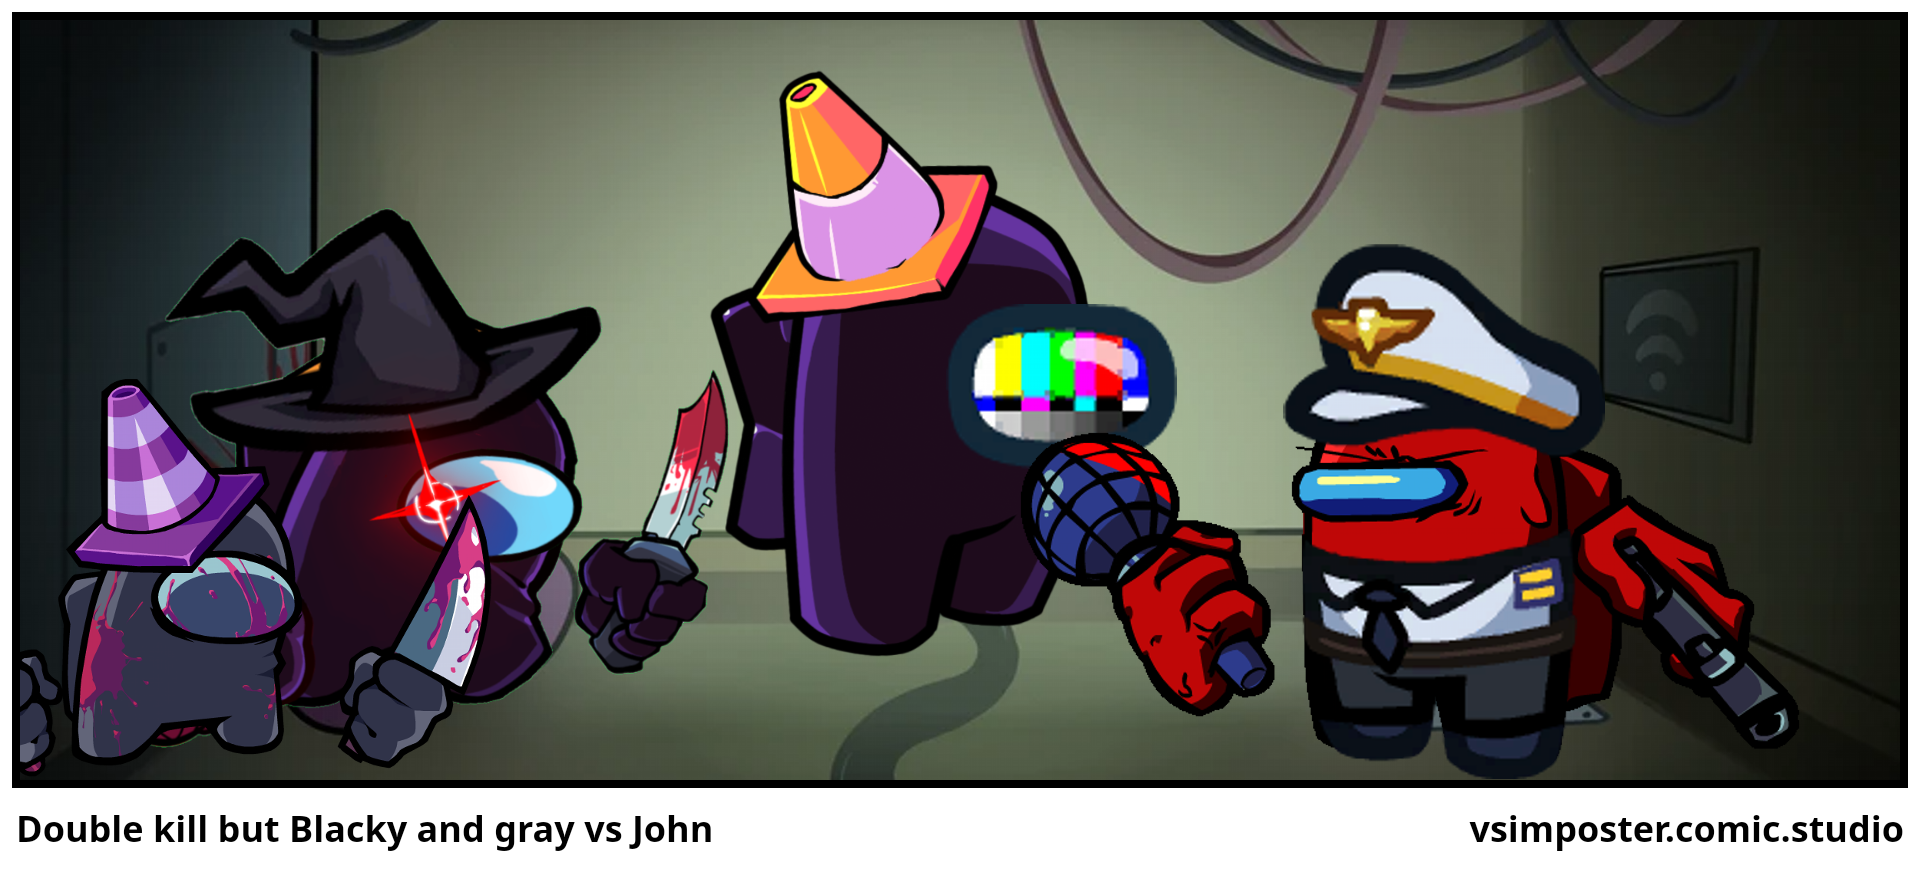 Double kill but Blacky and gray vs John